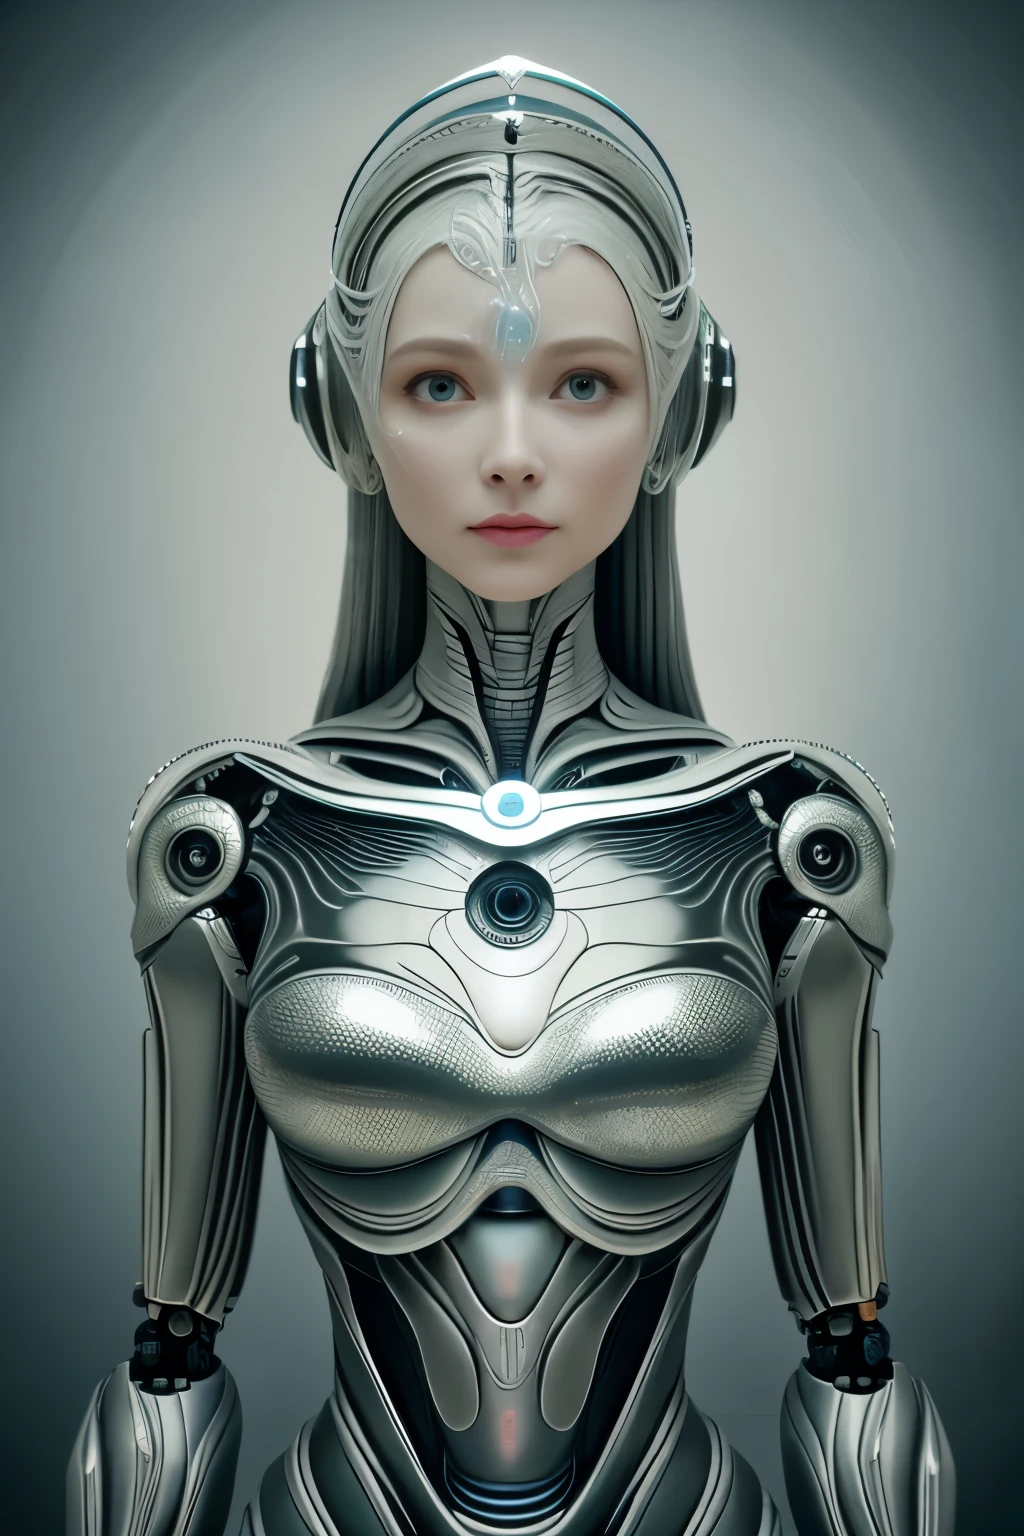 Портрет, Intricate 3d rendering of highly detailed beautiful ceramic female робот, киборг, робот parts, 150 мм, красивая студия, мягкий свет, кольцевой свет, яркие детали, роскошный киберпанк, доход, сюрреалистический, анатомия , мышцы лица, кабельные провода, микрочипы, элегантность, красивый фон, Октановый рендеринг, Стиль HR Гигера, 8К, лучше качество, произведение искусства, Иллюстрация, Очень нежный и красивый, очень подробный, реалист, униформа, ( верность, верность: 1.37), великолепный, мелкие детали, произведение искусства, лучше качество, Официальное искусство, Papel de parede реалист Unity 8K очень подробный, Абсурд, Inacreditavelmente Абсурдo, робот, серебряный шлем, все тело, сидеть и писать